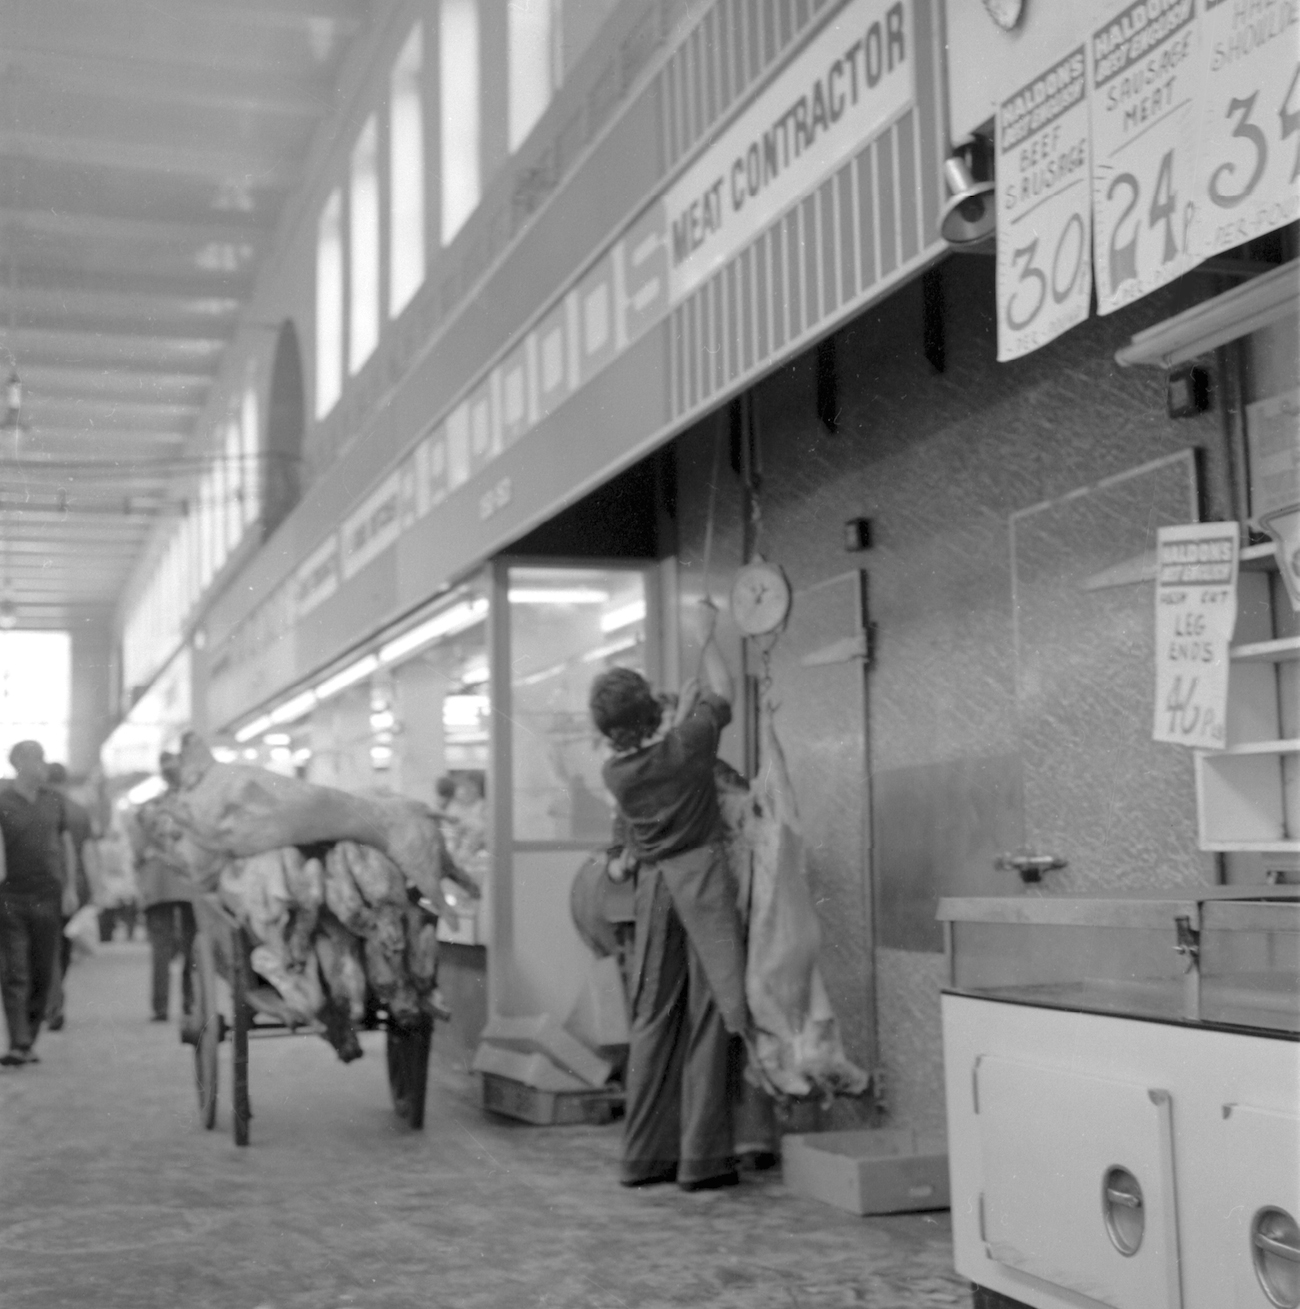 Grainger Market 1970s newcastle